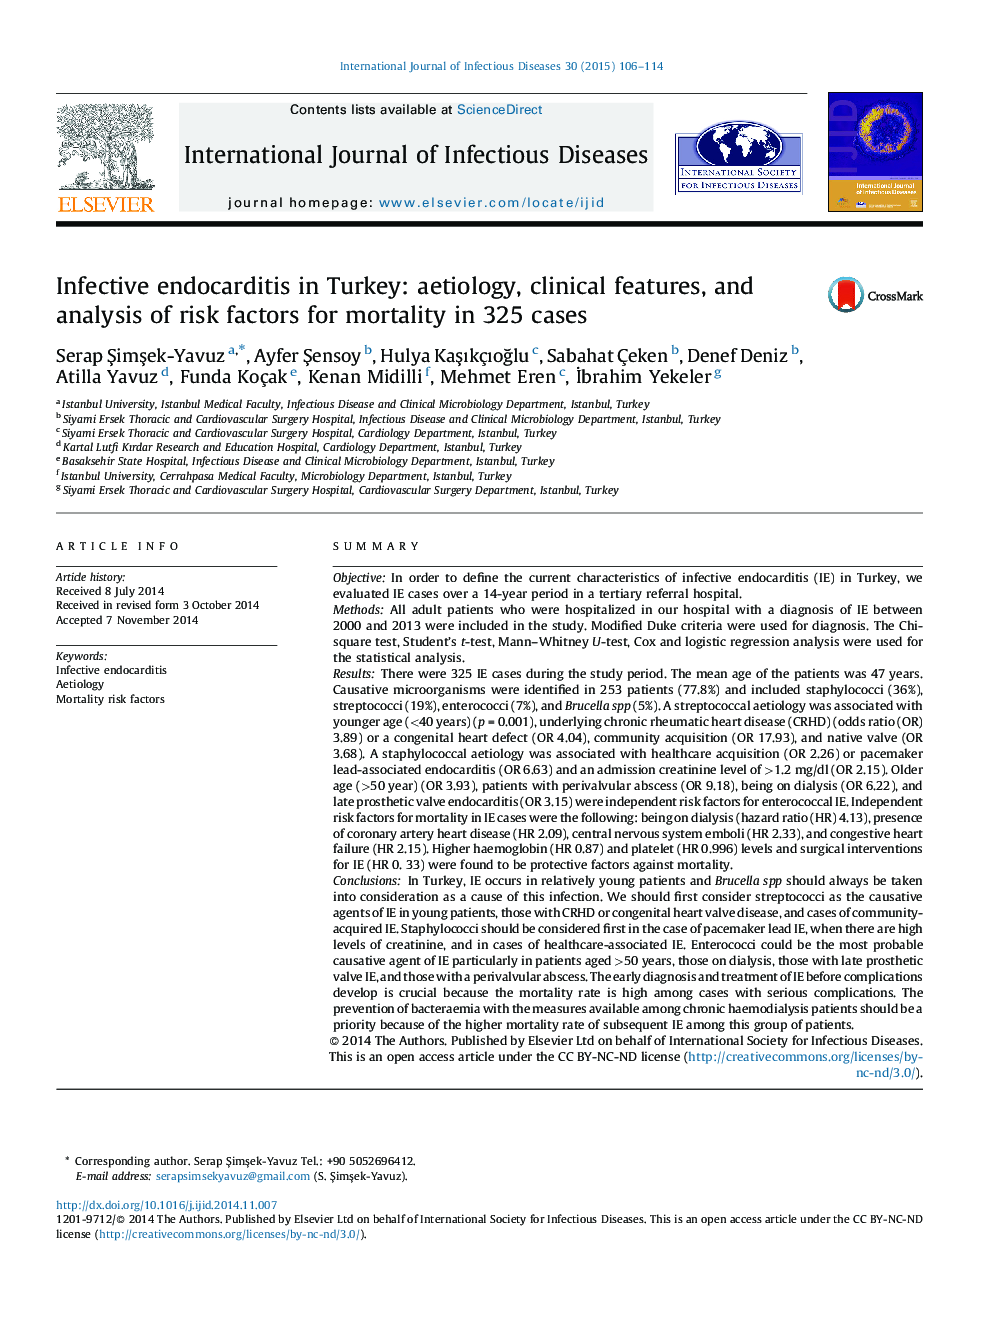 اندوکاردیت عفونی در ترکیه: علل تخریب، ویژگی های بالینی و تجزیه و تحلیل عوامل خطر مرگ و میر در 325 مورد 